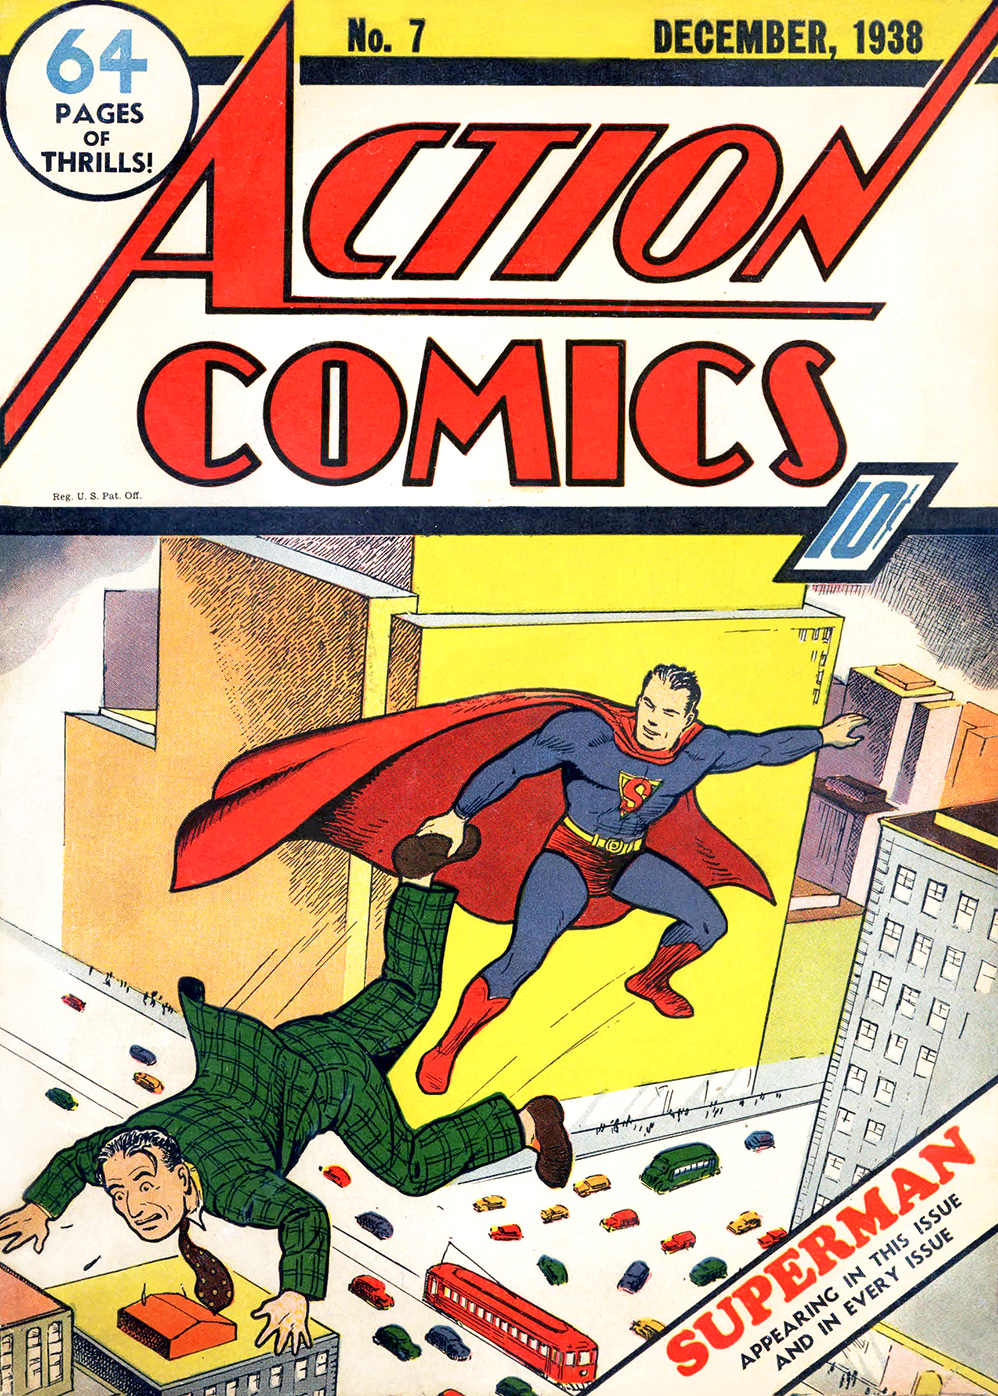 Action Comics Vol. 1 #7